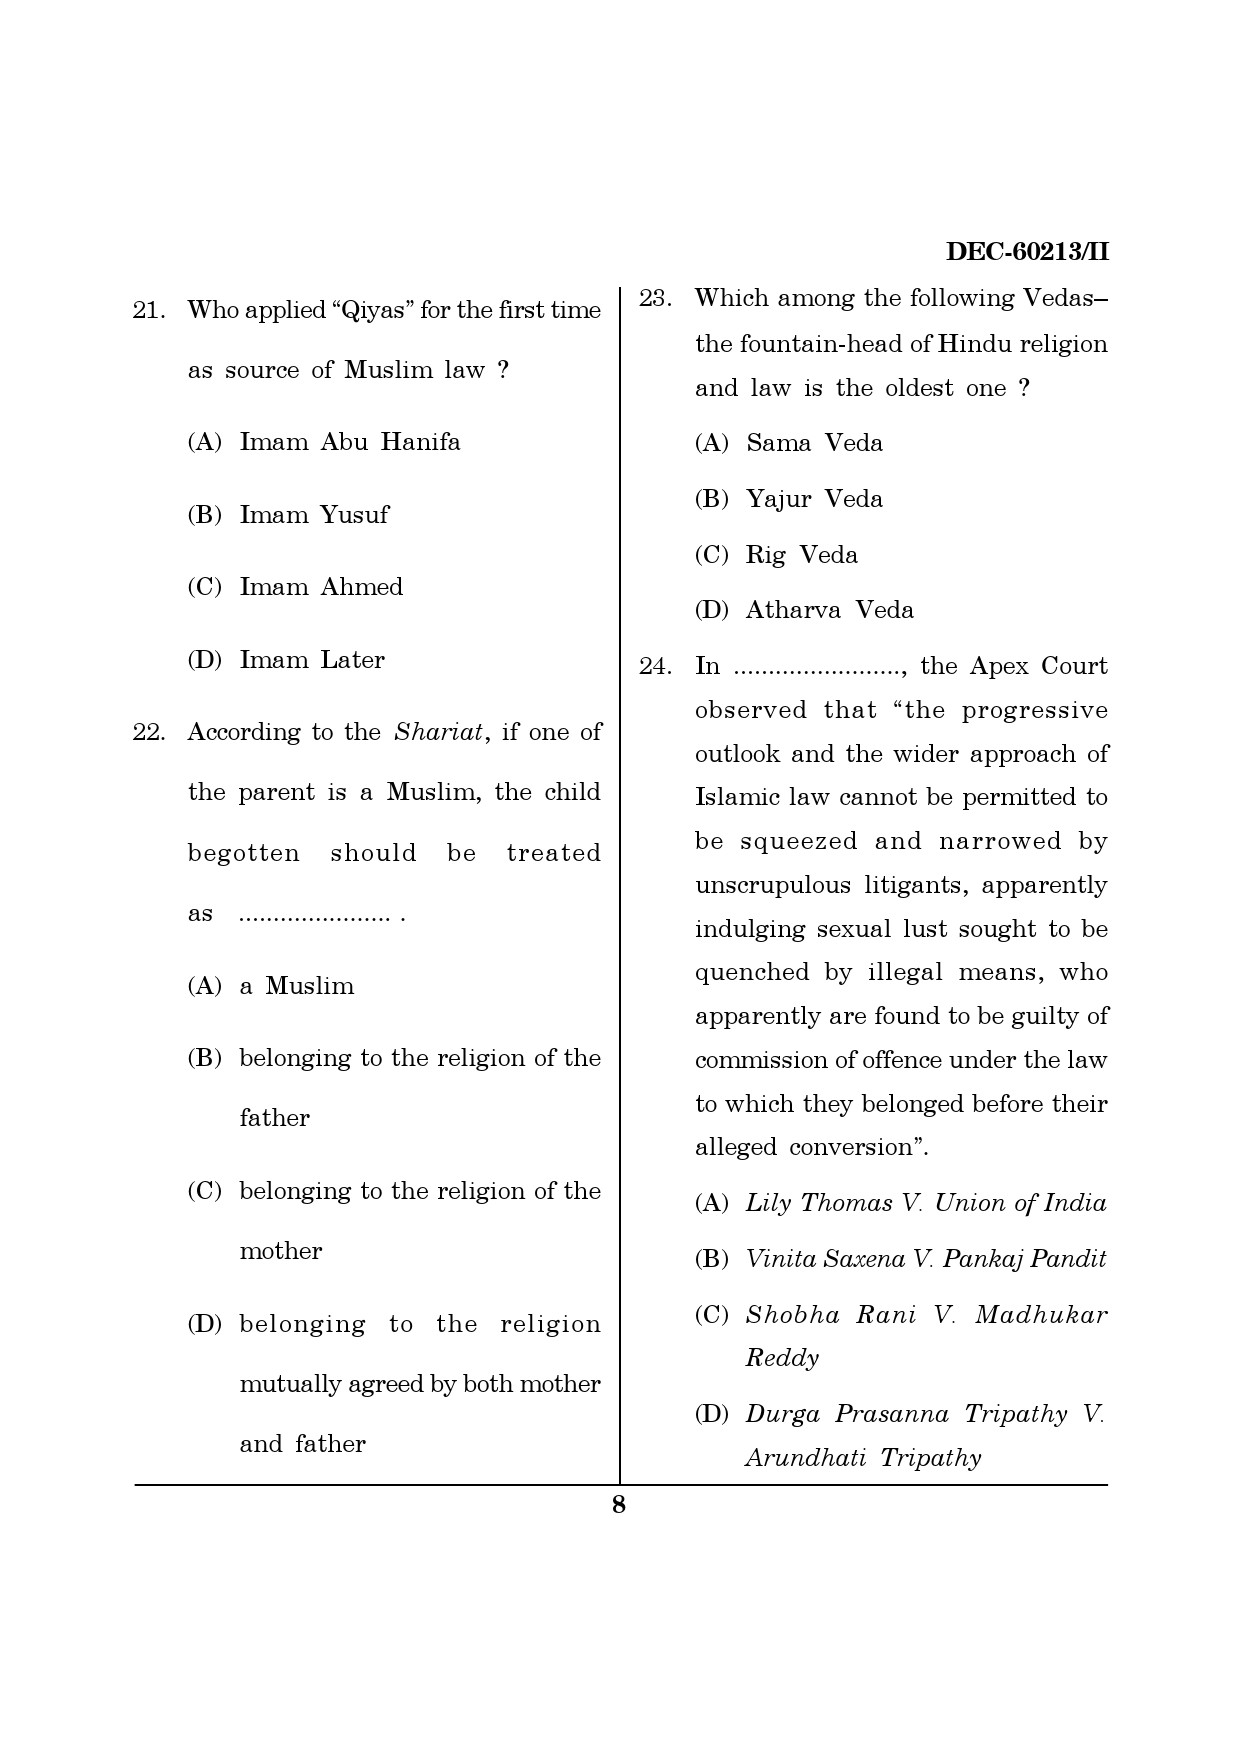 Maharashtra SET Law Question Paper II December 2013 7